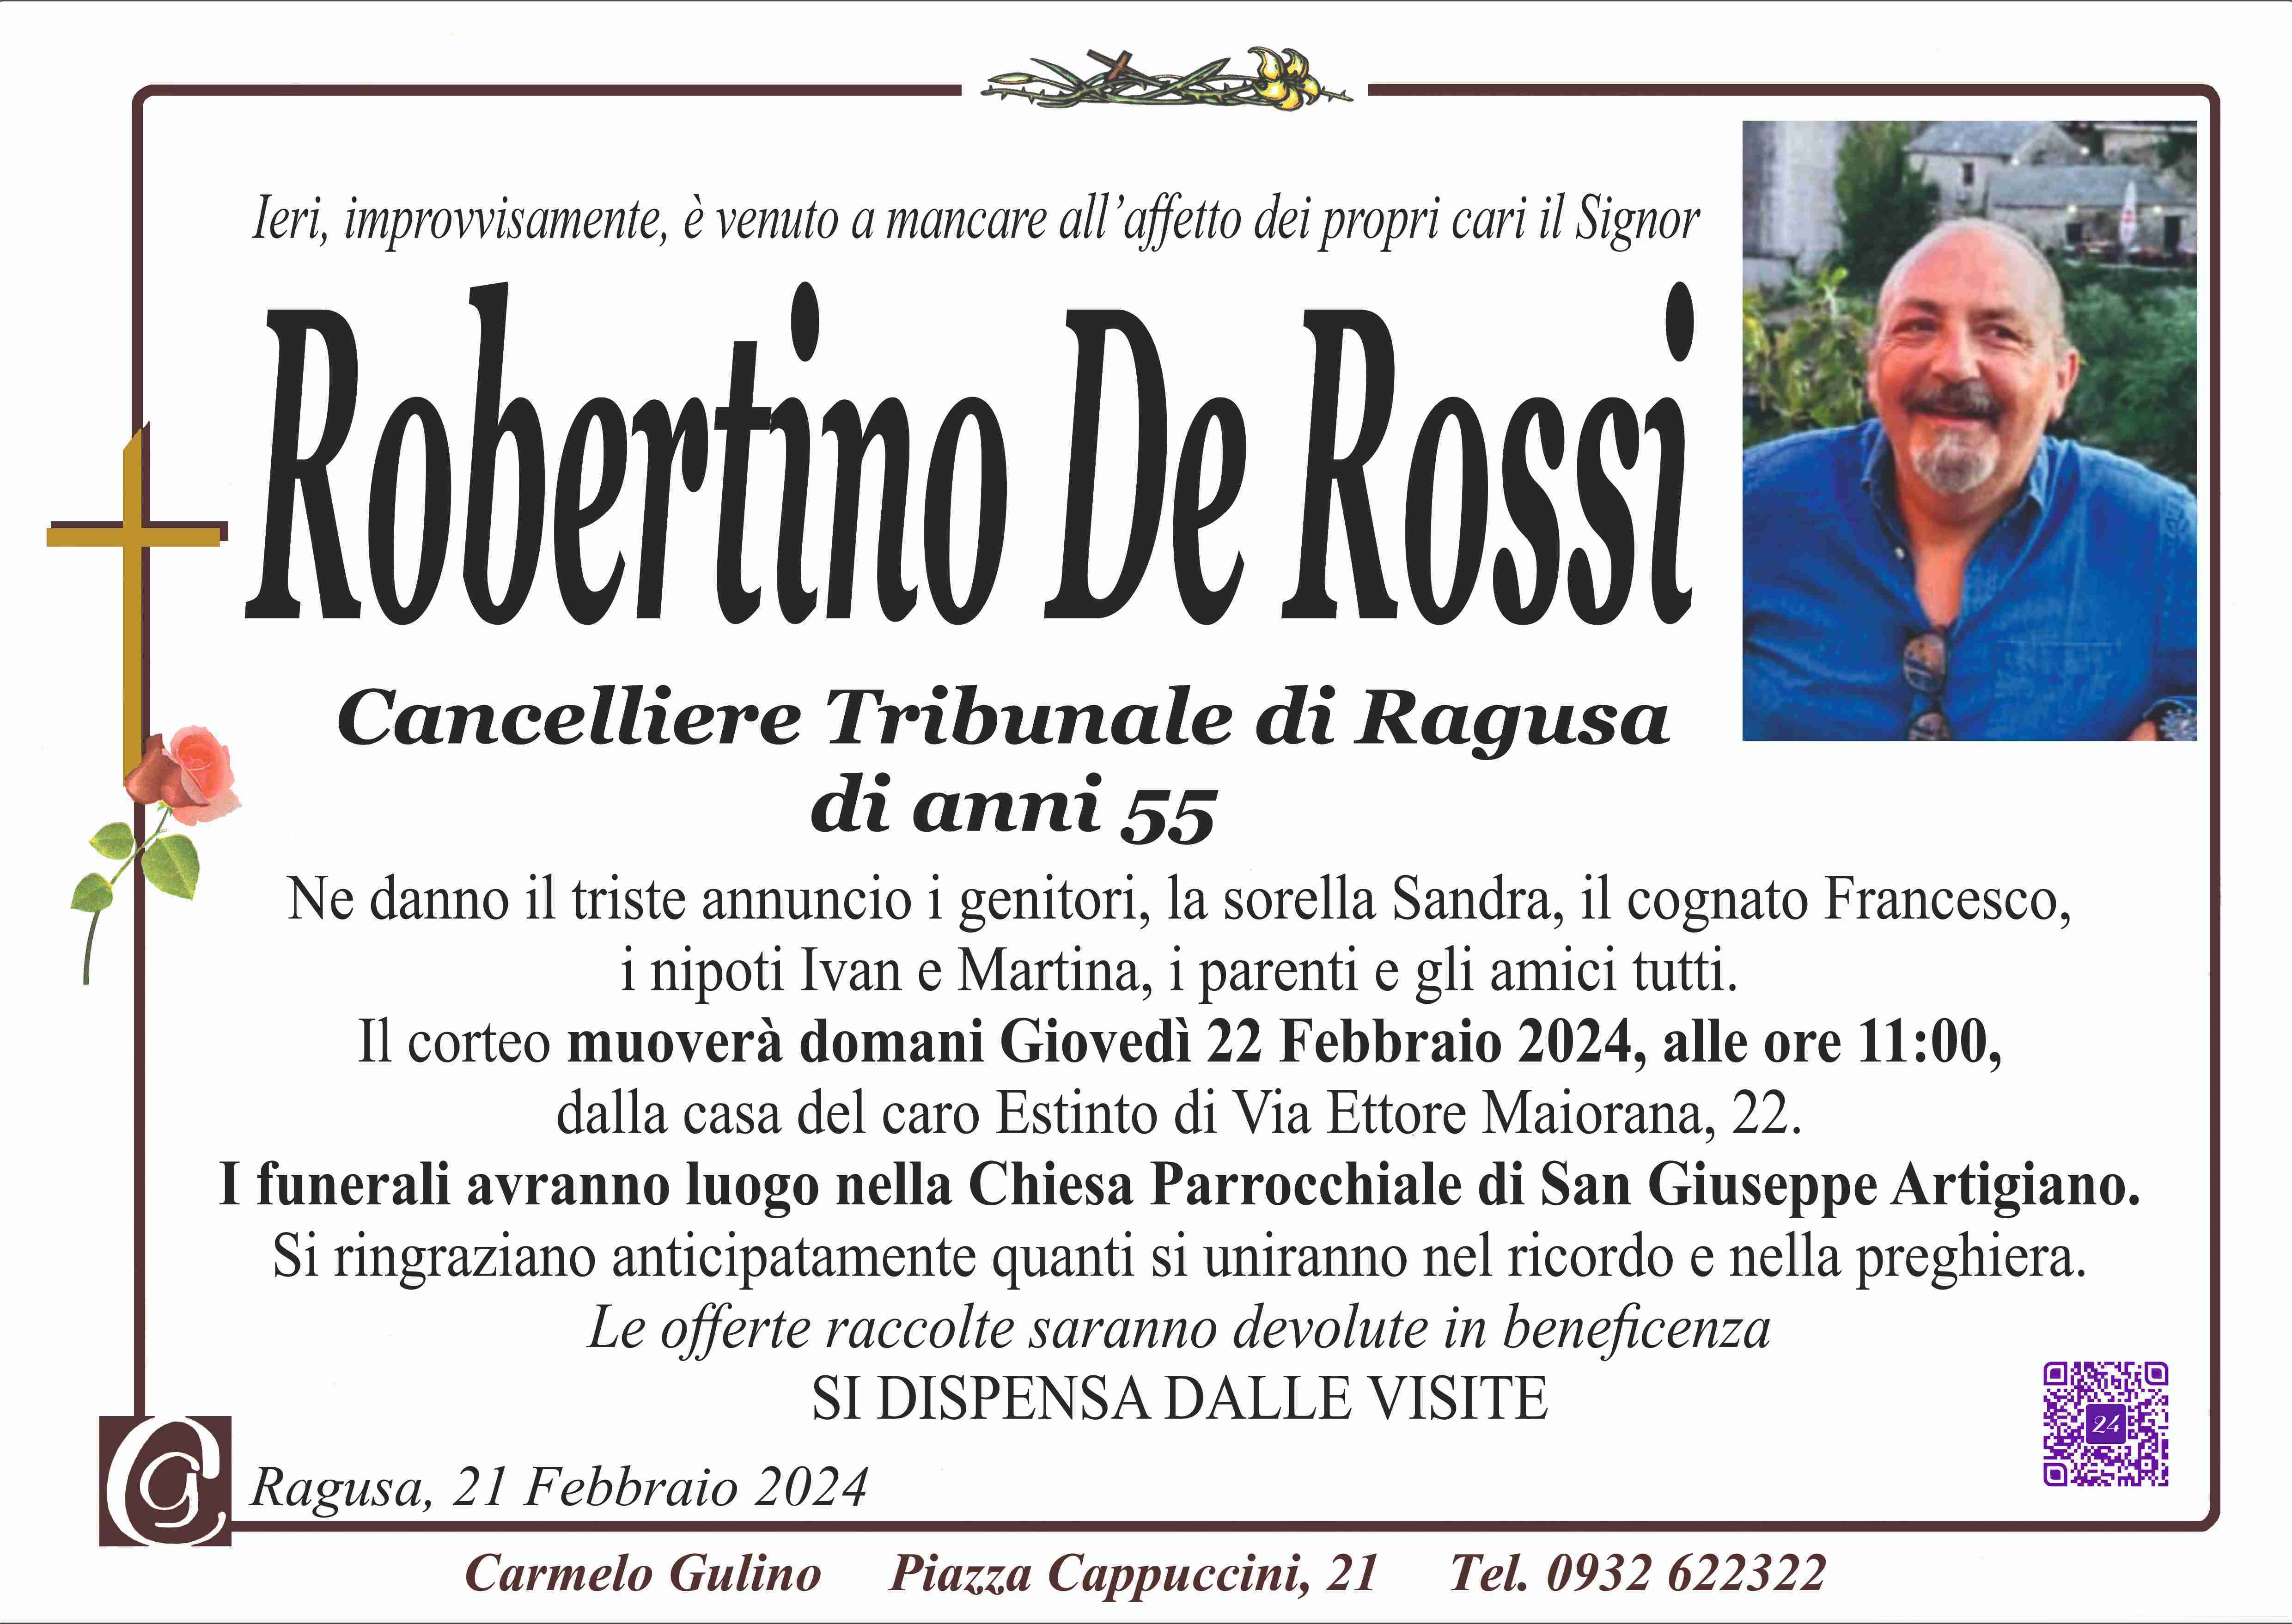 Robertino De Rossi